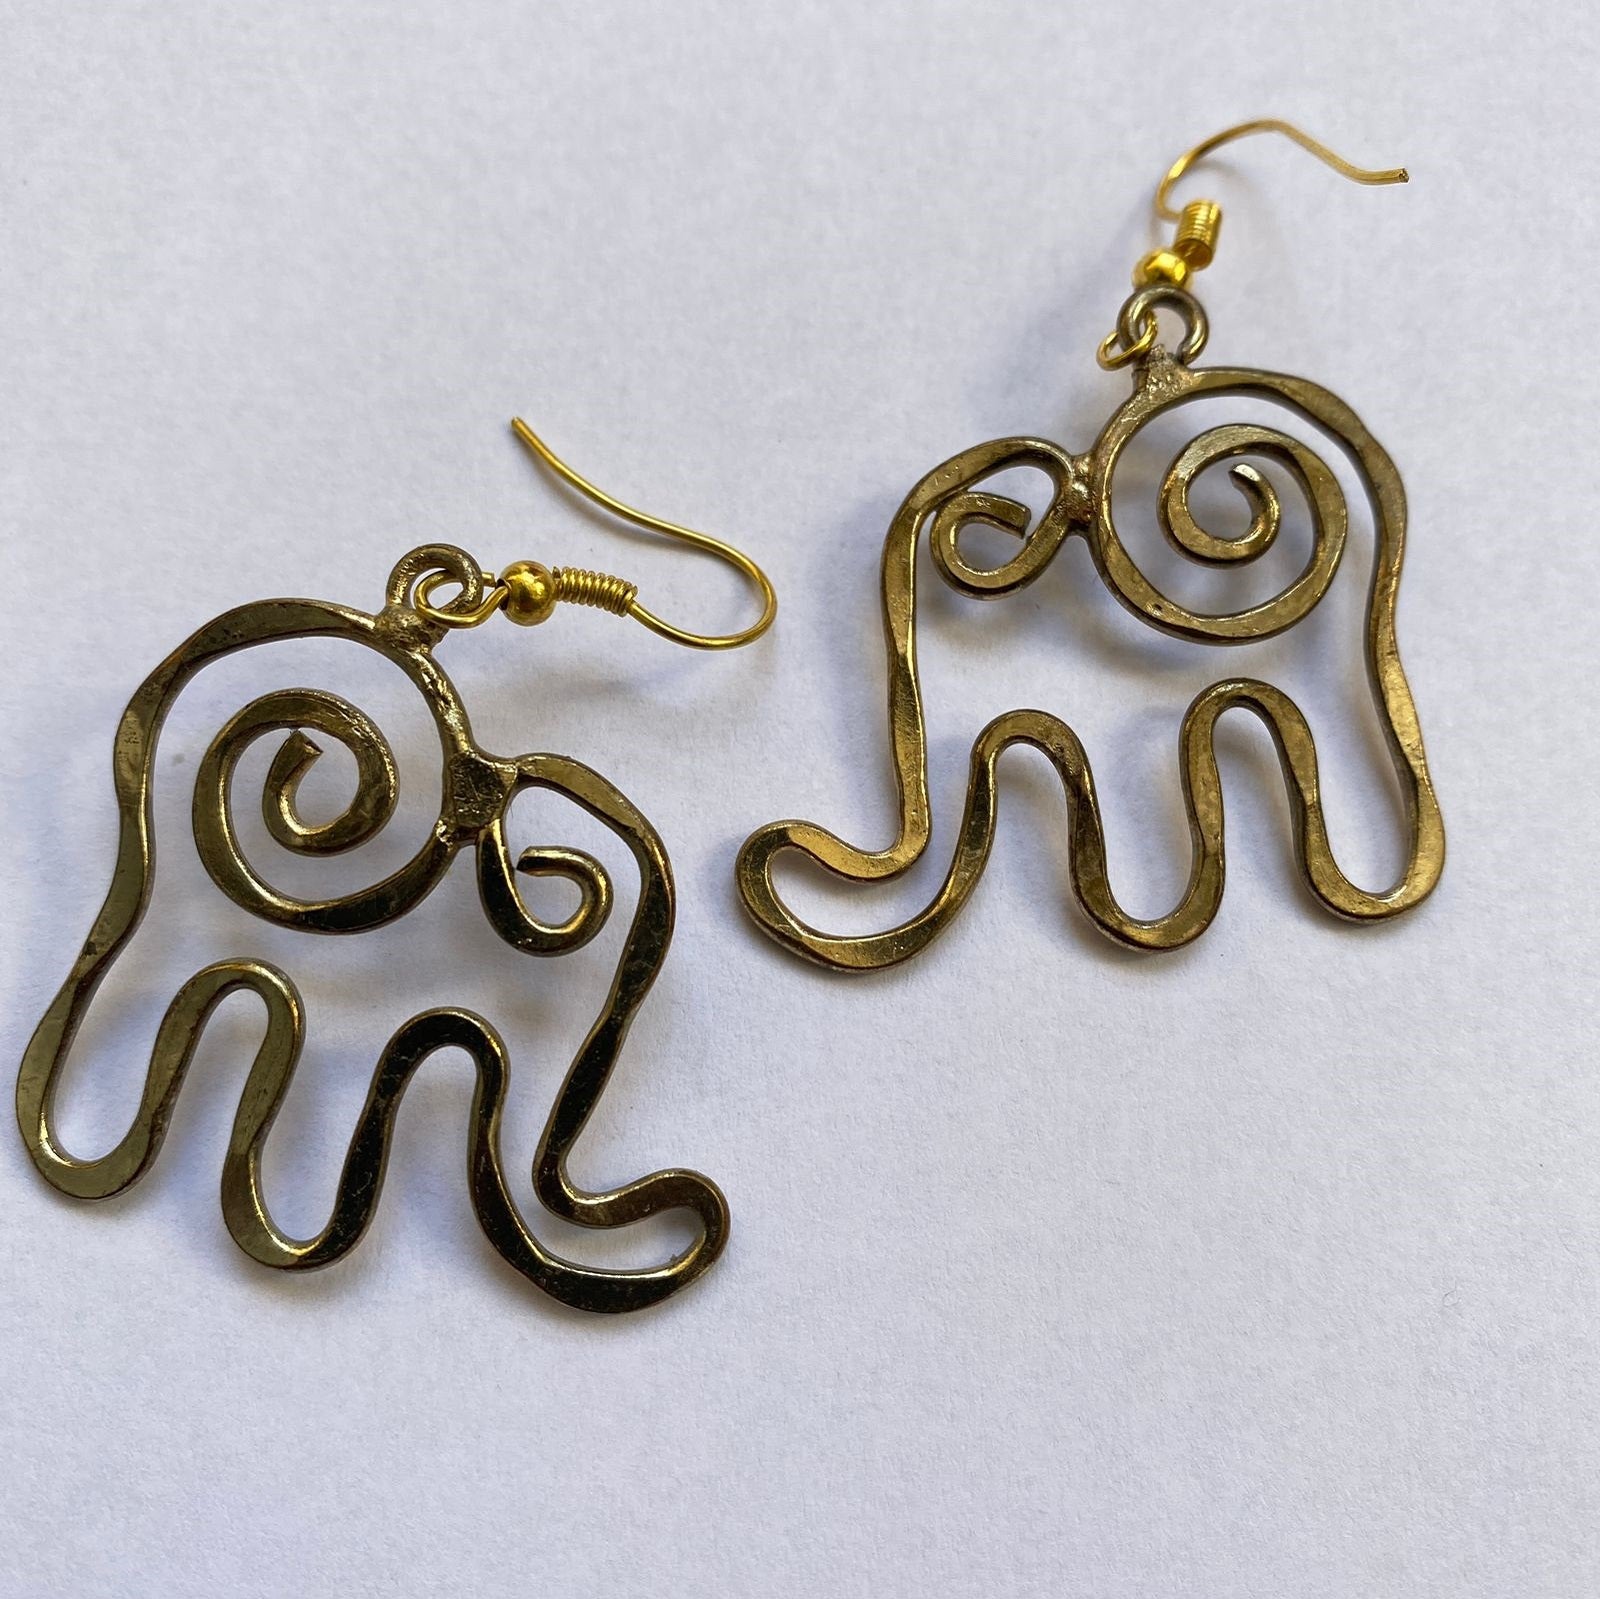 Elephant Brass Earring